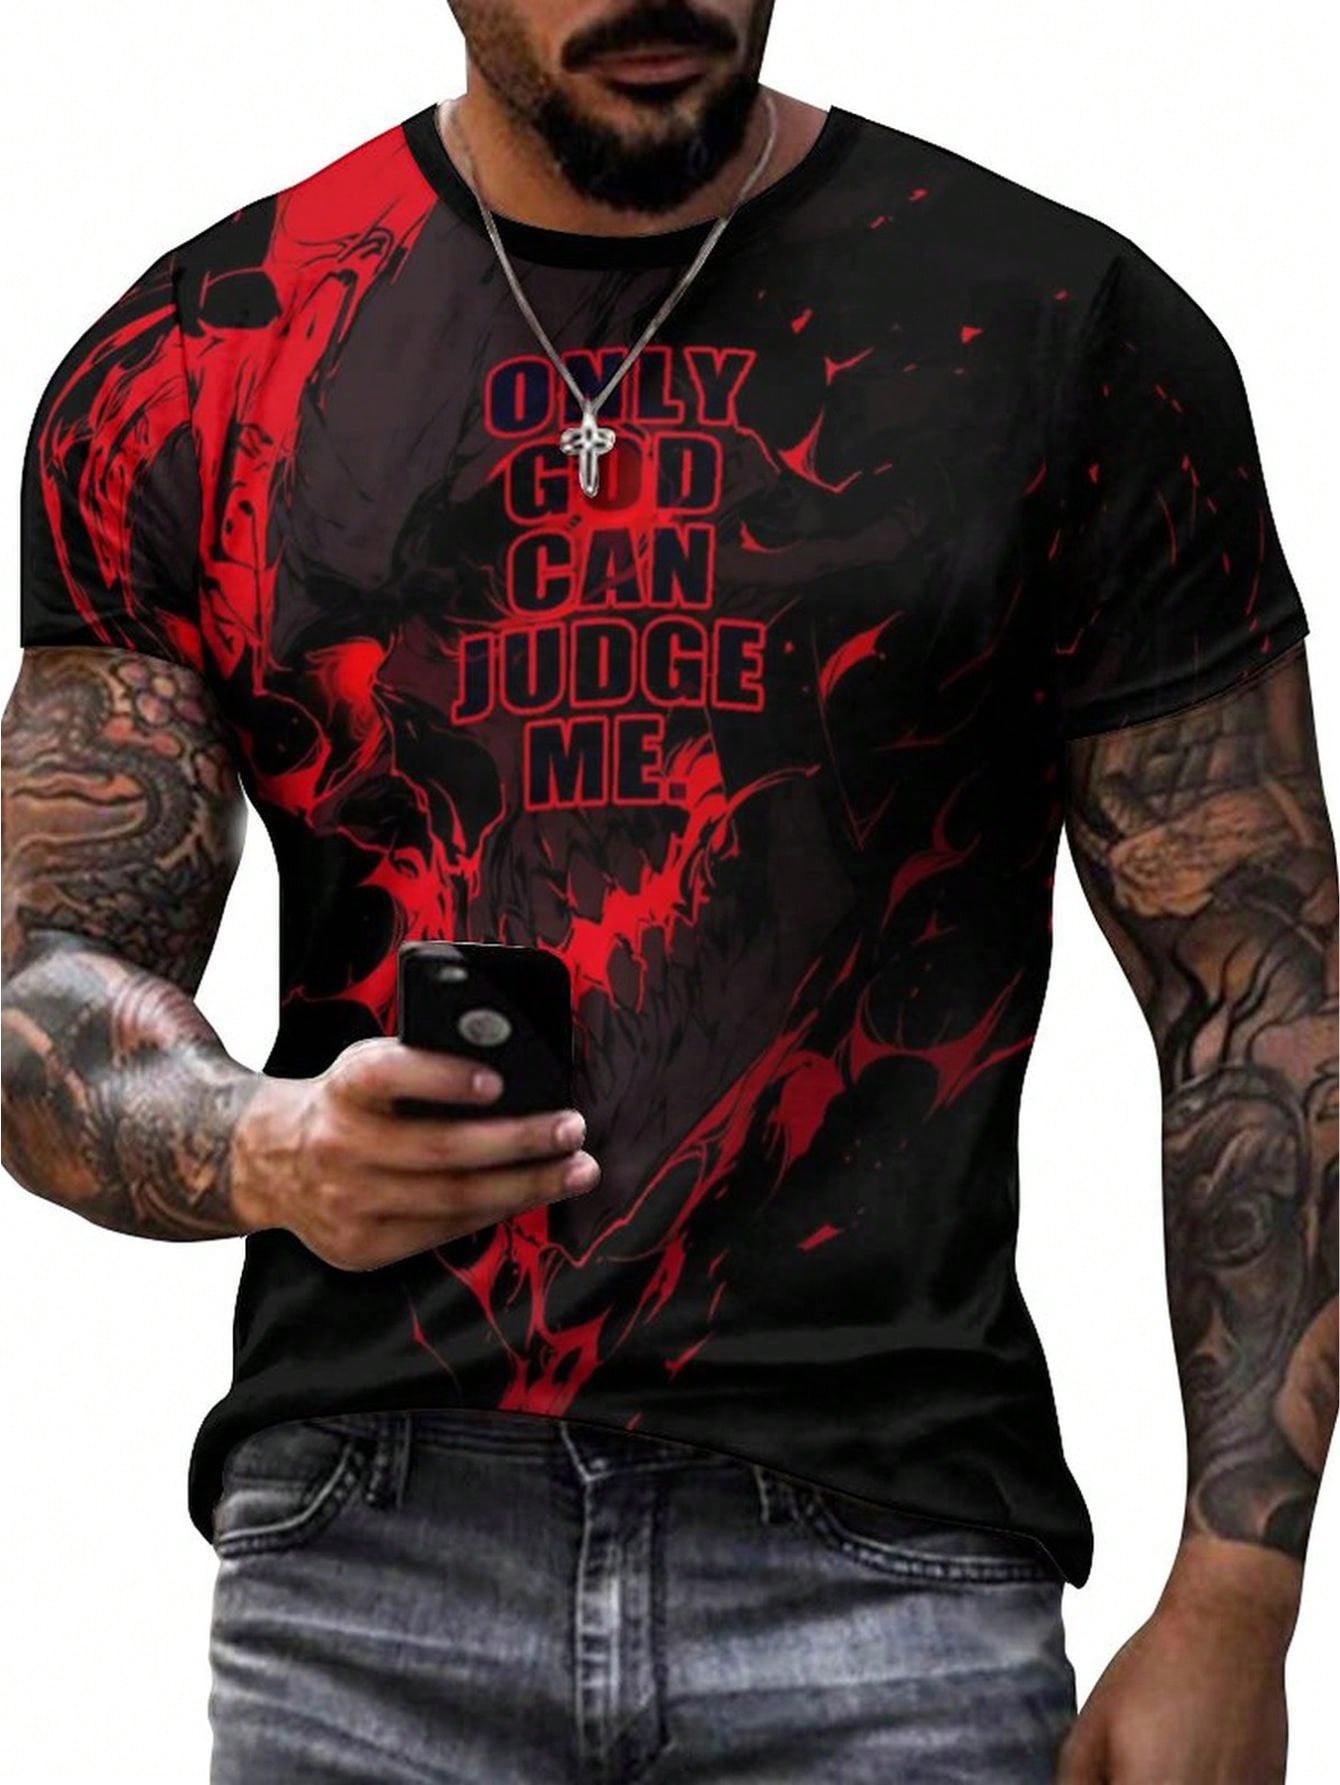 Мужская футболка с графическим рисунком, красный темно фиолетовая мужская черная футболка с графическим рисунком футболка с фанатом рок группы размер s 3xl модная футболка топ футболка